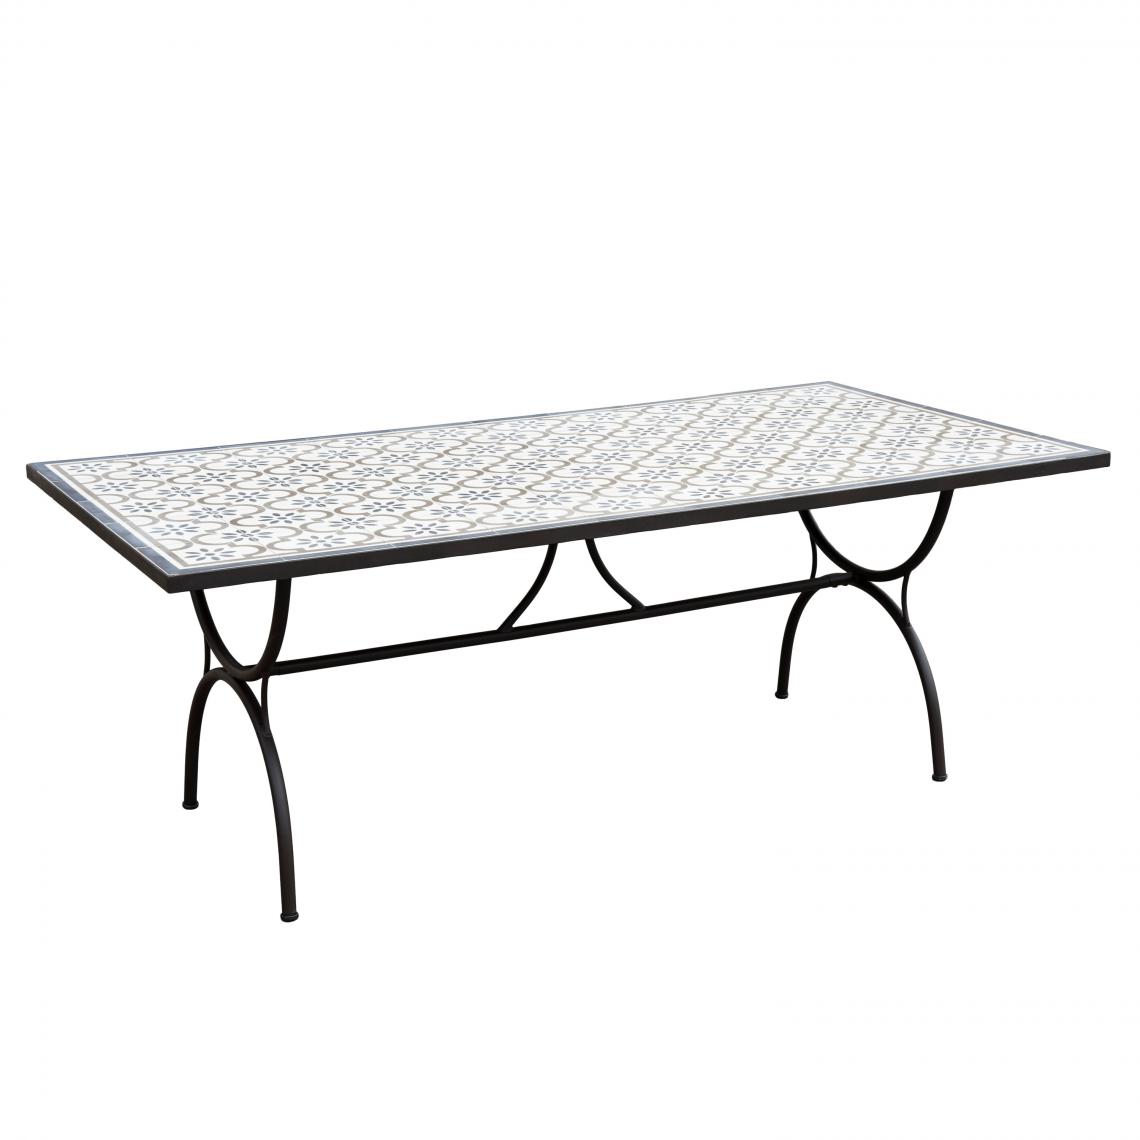 MACABANE - Table rectangulaire Plateau Carreaux de ciment 203x102cm - Pieds métal - Tables de jardin